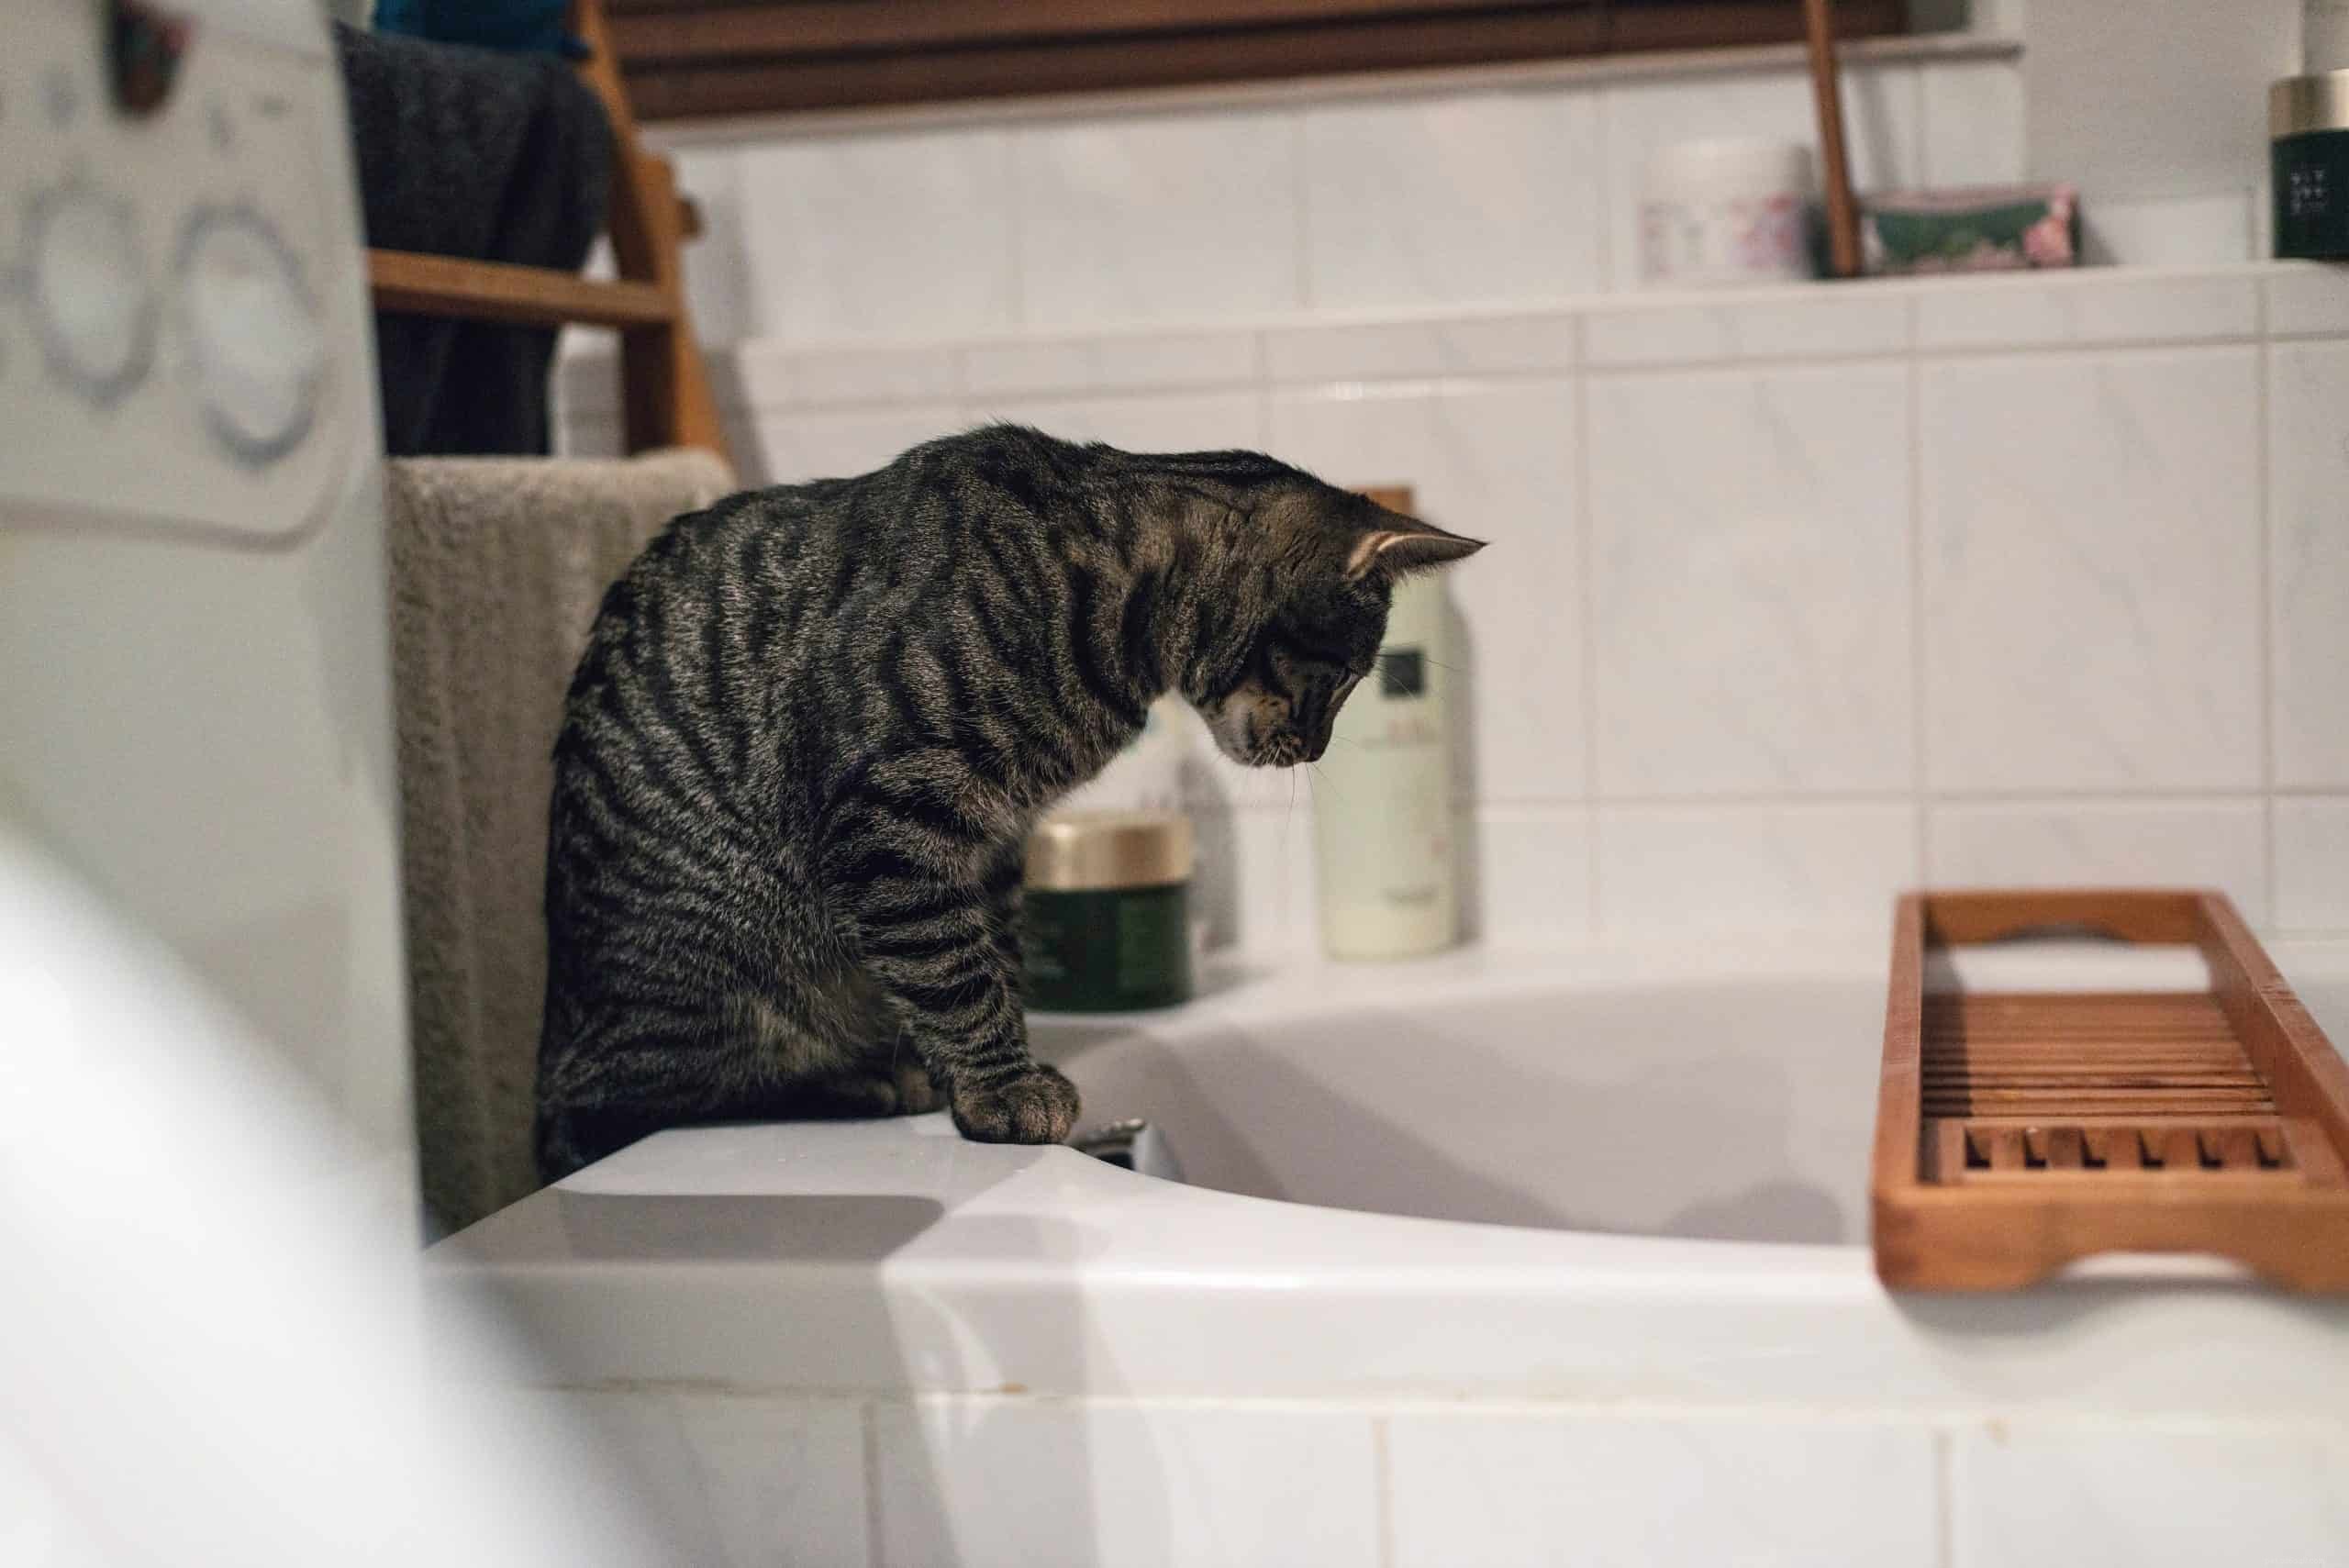 Por que a maioria dos gatos odeia água?